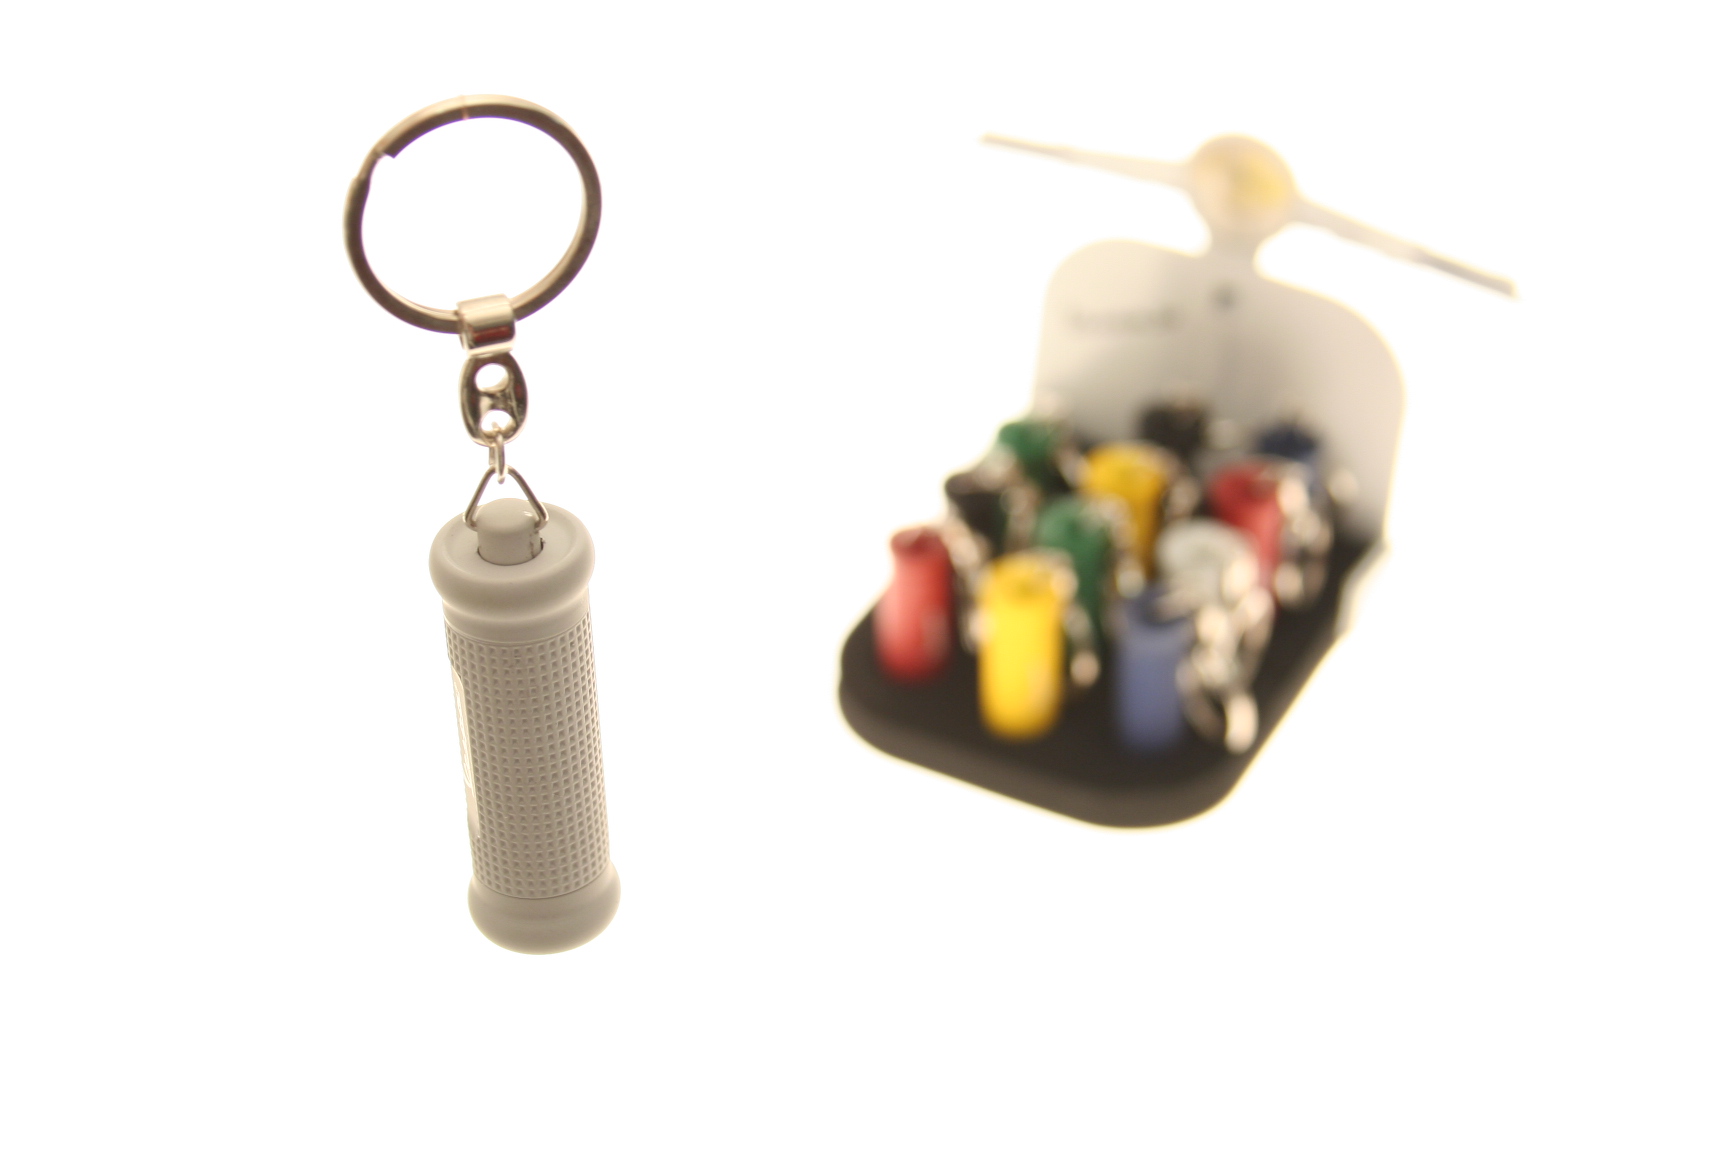 Schlüsselanhänger Taschenlampe klein 6x1,5cm, versch. Farben